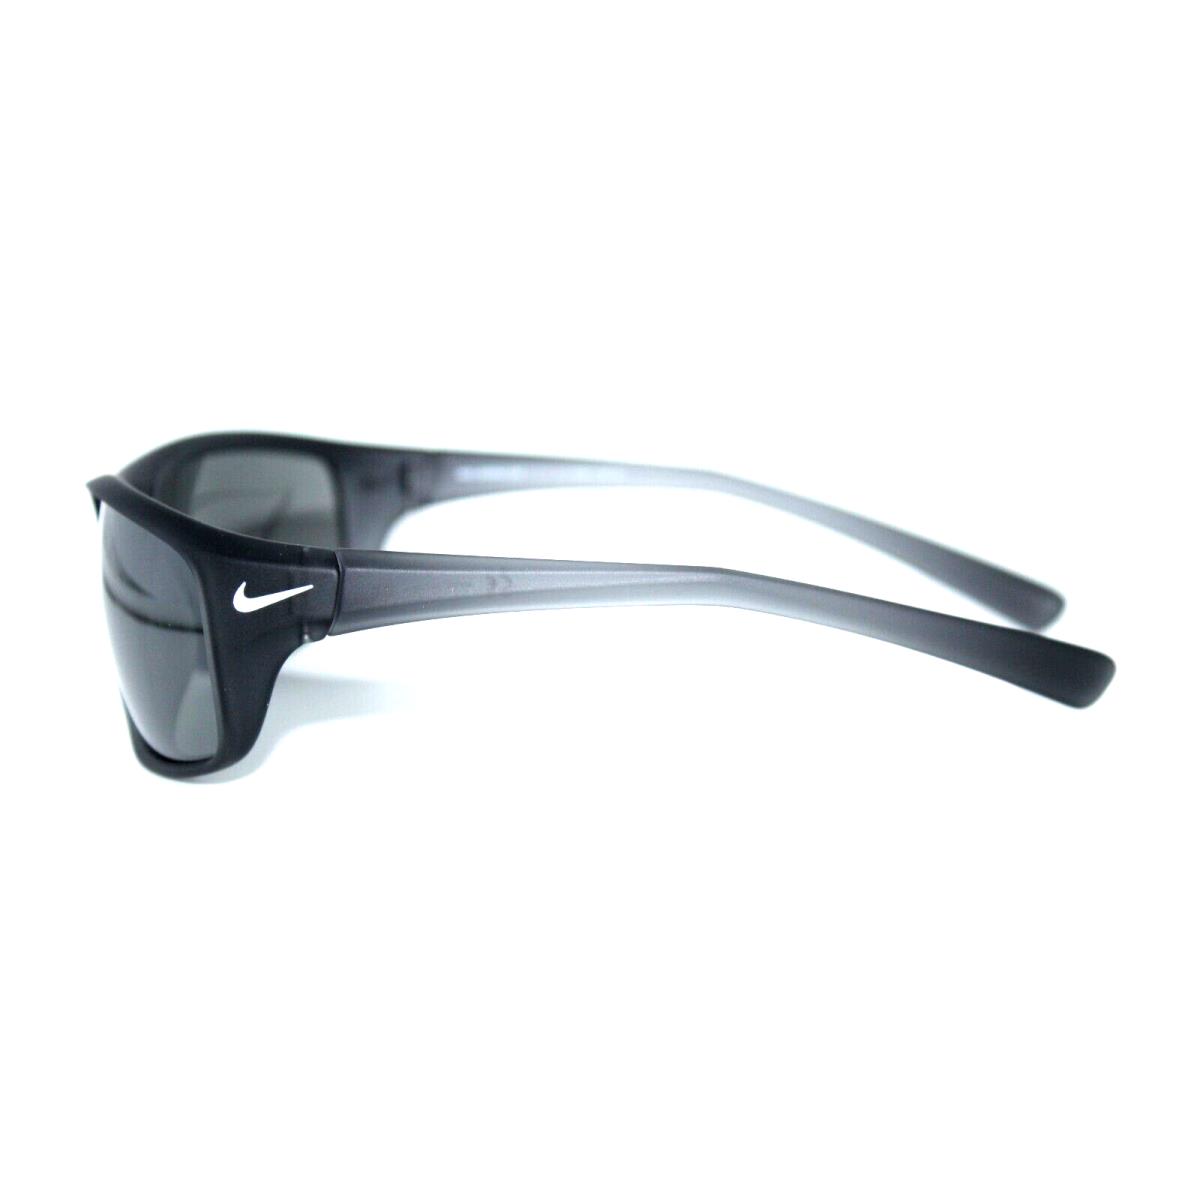 Nike sunglasses ADRENALINE - Gray Frame, Gray Lens 2